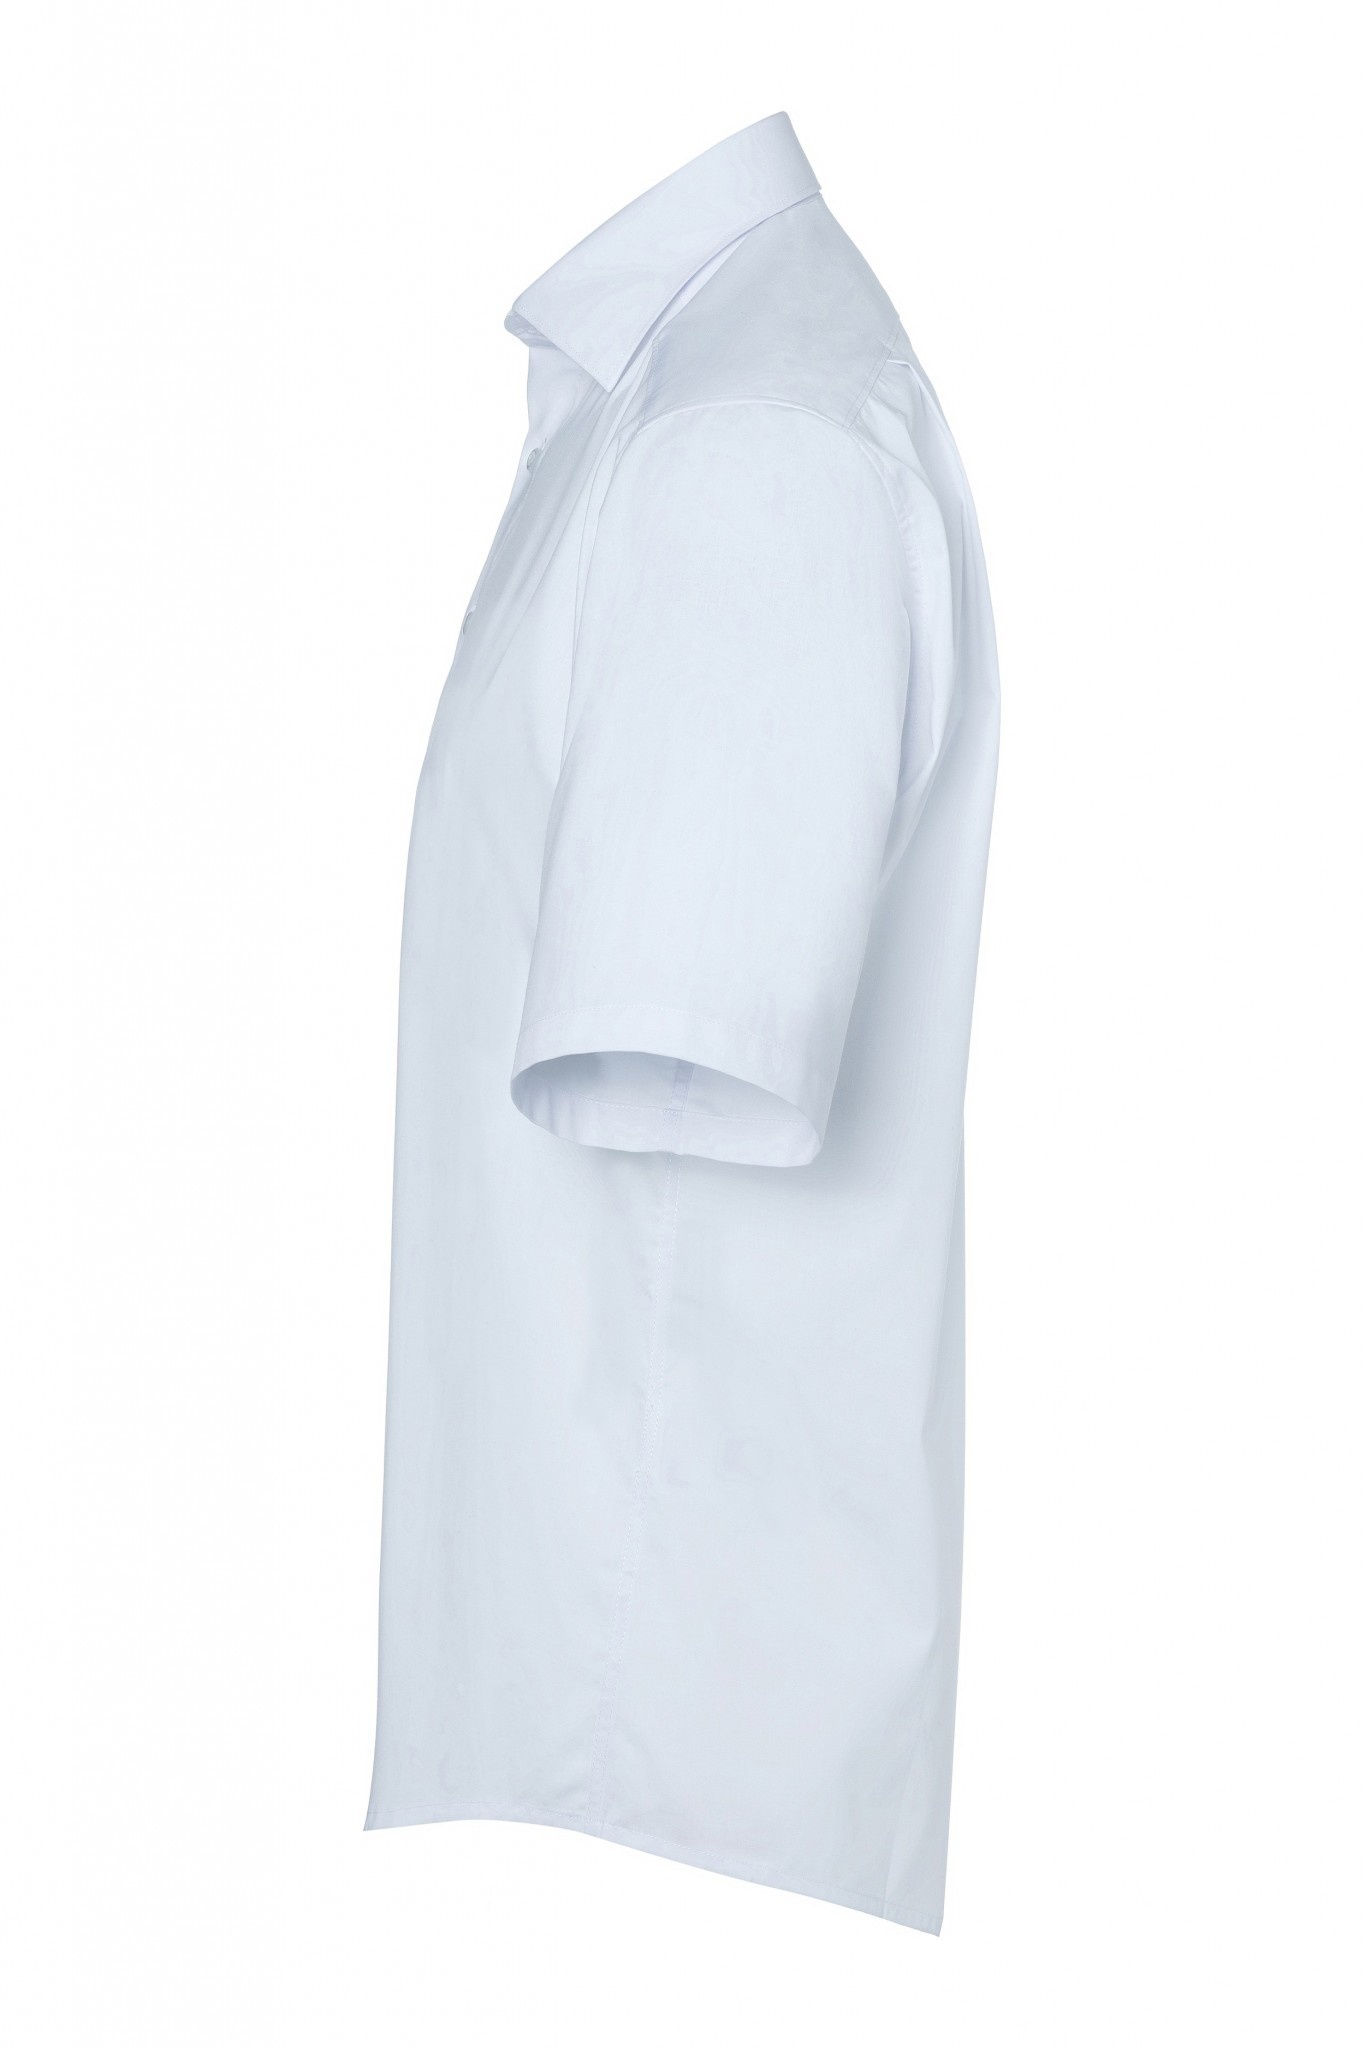 Herrenhemd Jona | Weiß | 49% Polyester / 49% Baumwolle / 2% Elastolefin | Erhältlich in 8 Größen